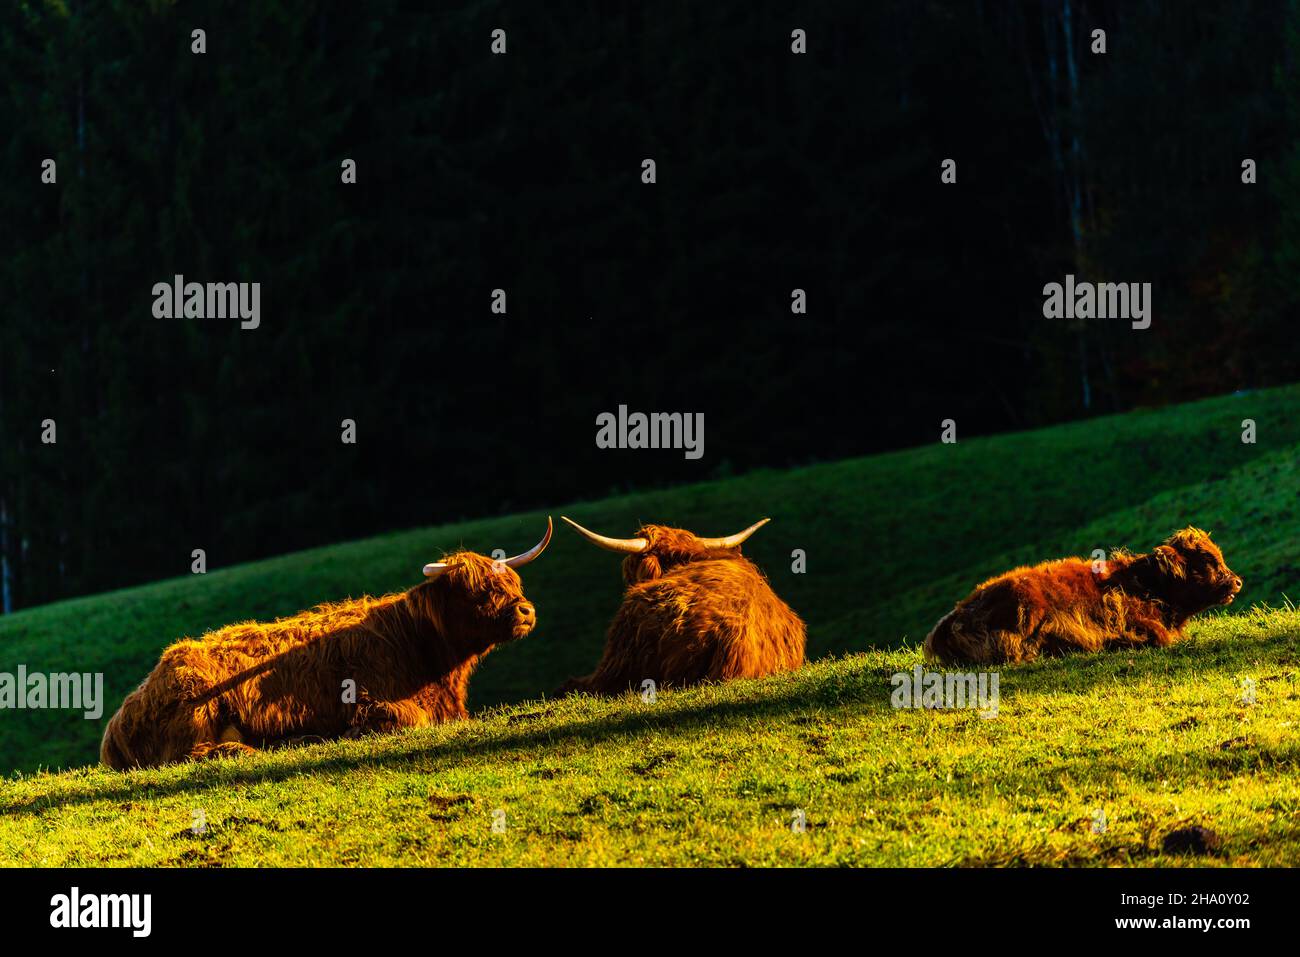 Vaches des Highlands et bovins noirs le long de Rennweg à la station mddle d'Obersalzbergbahn, Berchtesgaden, haute-Bavière, sud de l'Allemagne, Europe Banque D'Images